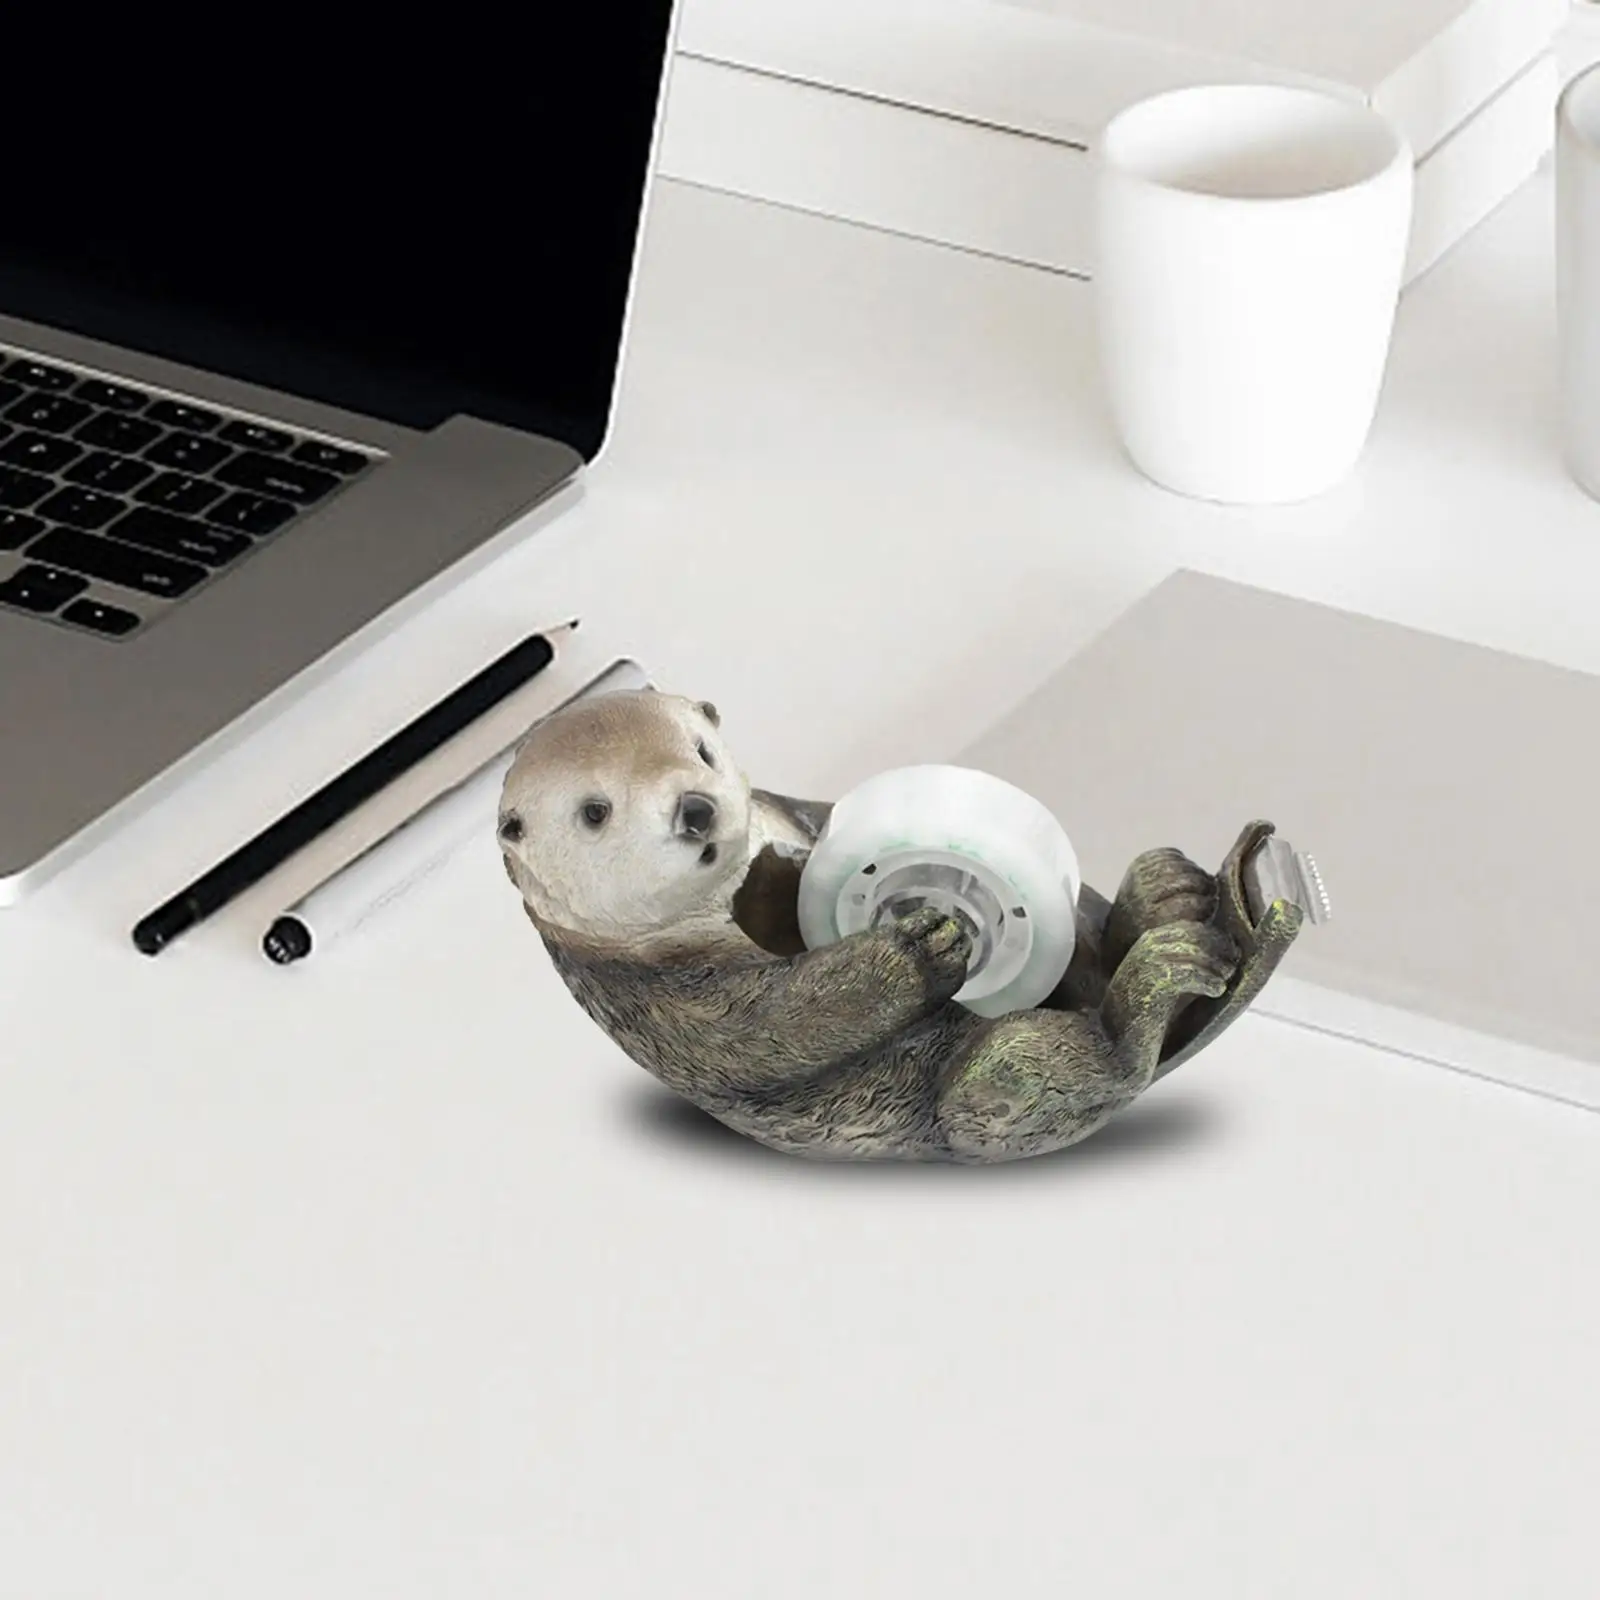 Otter Tape Dispenser Lightweight Novelty Gift Desk Accessory Cute Roll Holder for Scrapbooking DIY Art Projects Desktop Teachers